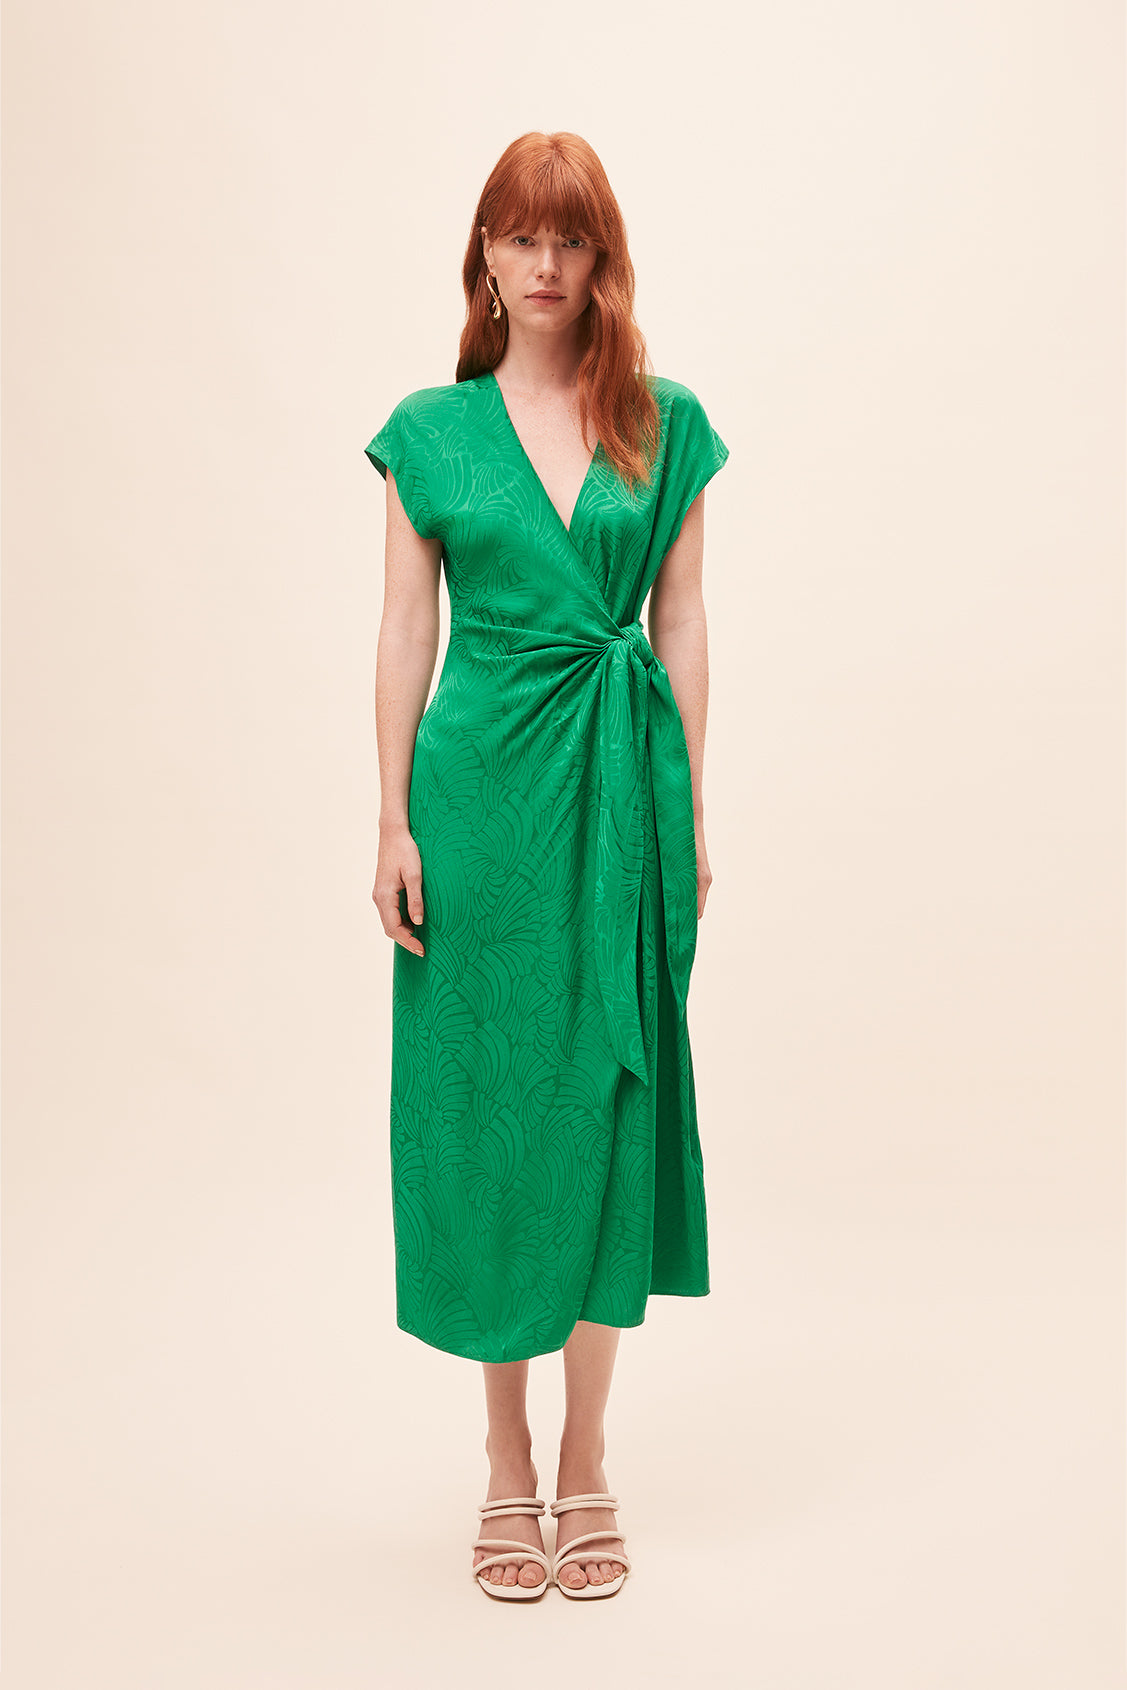 Citizen Green Dress | Suncoo